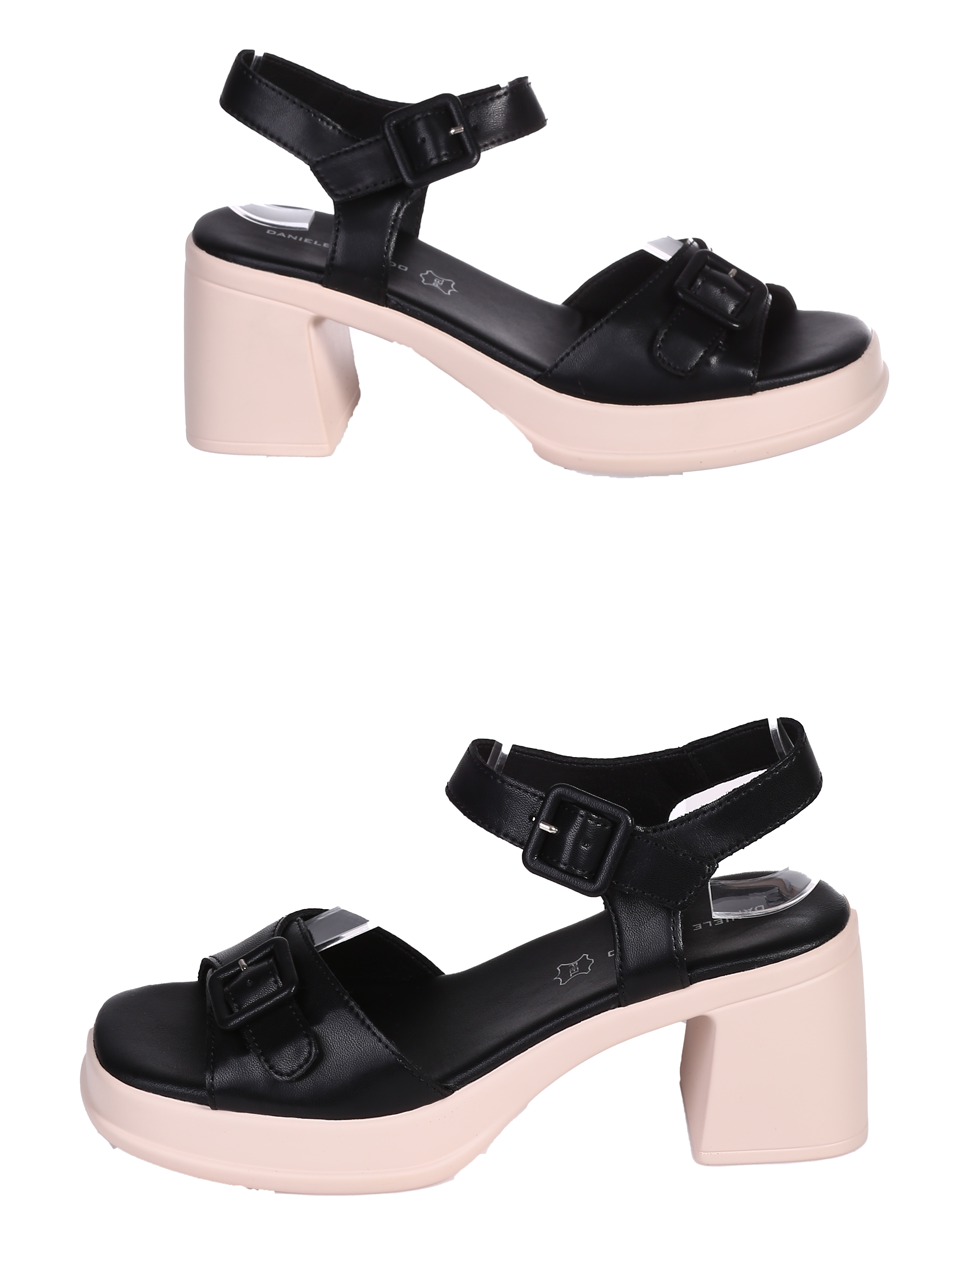 Ежедневни дамски сандали на ток в черен/бежов цвят 4AF-24166 black/beige